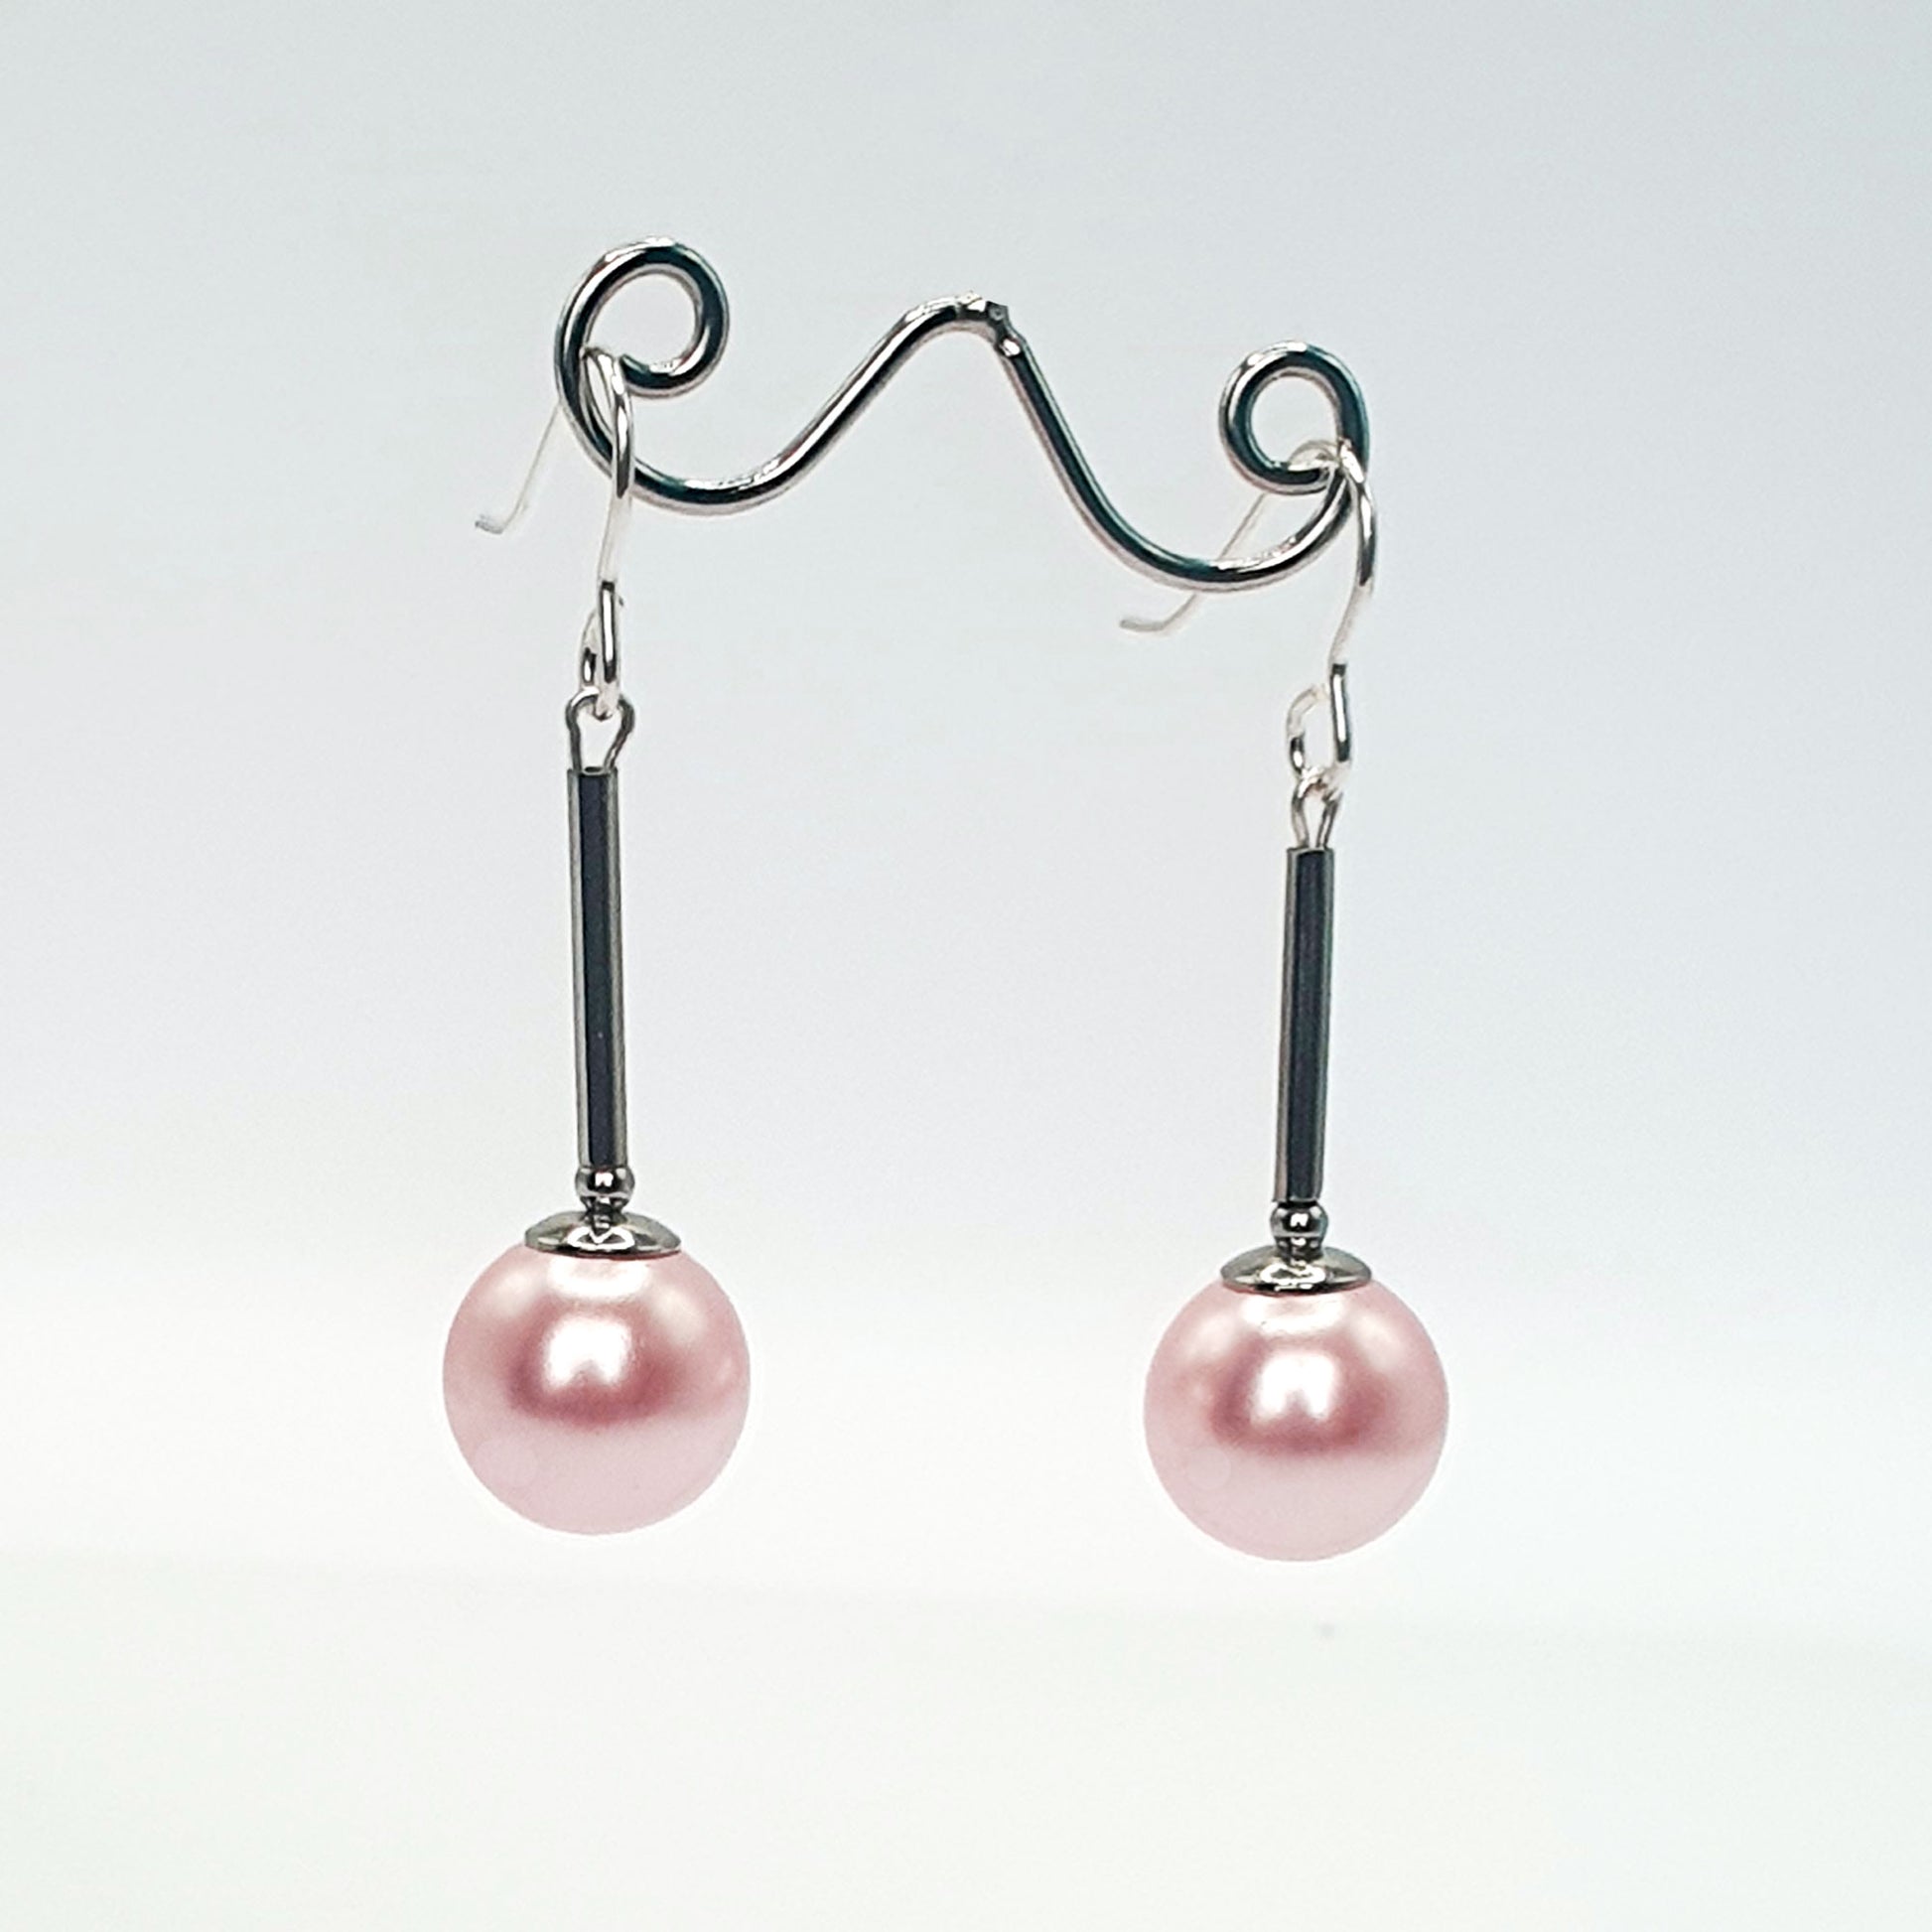 Pale pink glass pearl long drop earrings